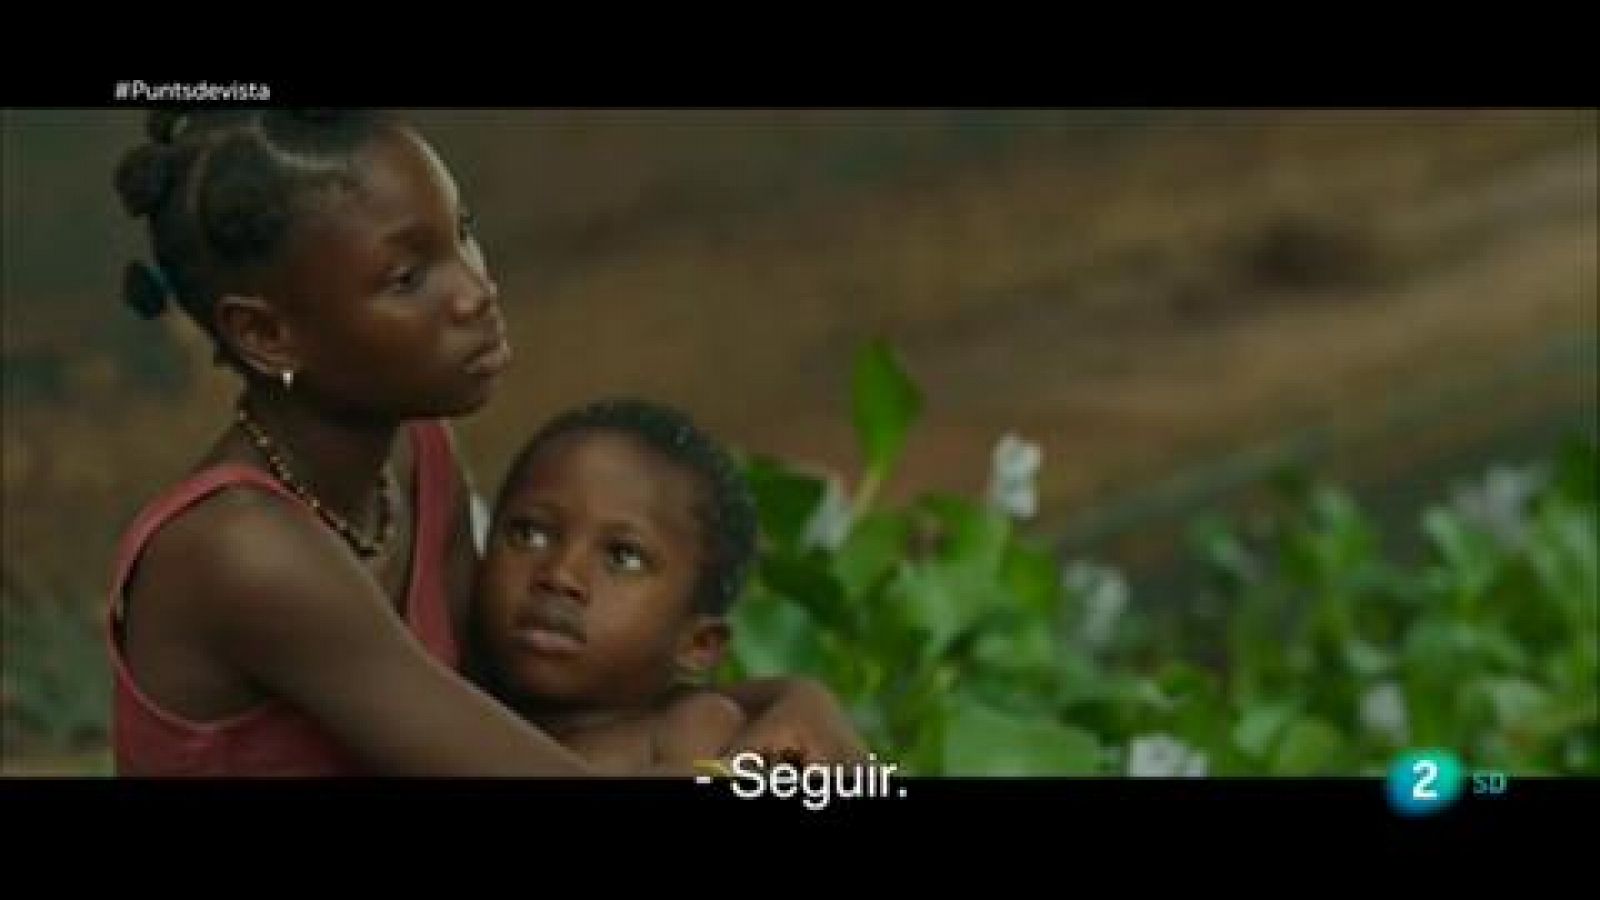 Punts de vista - Reportatge sobre la pel·lícula 'Adú', de Salvador Calvo 